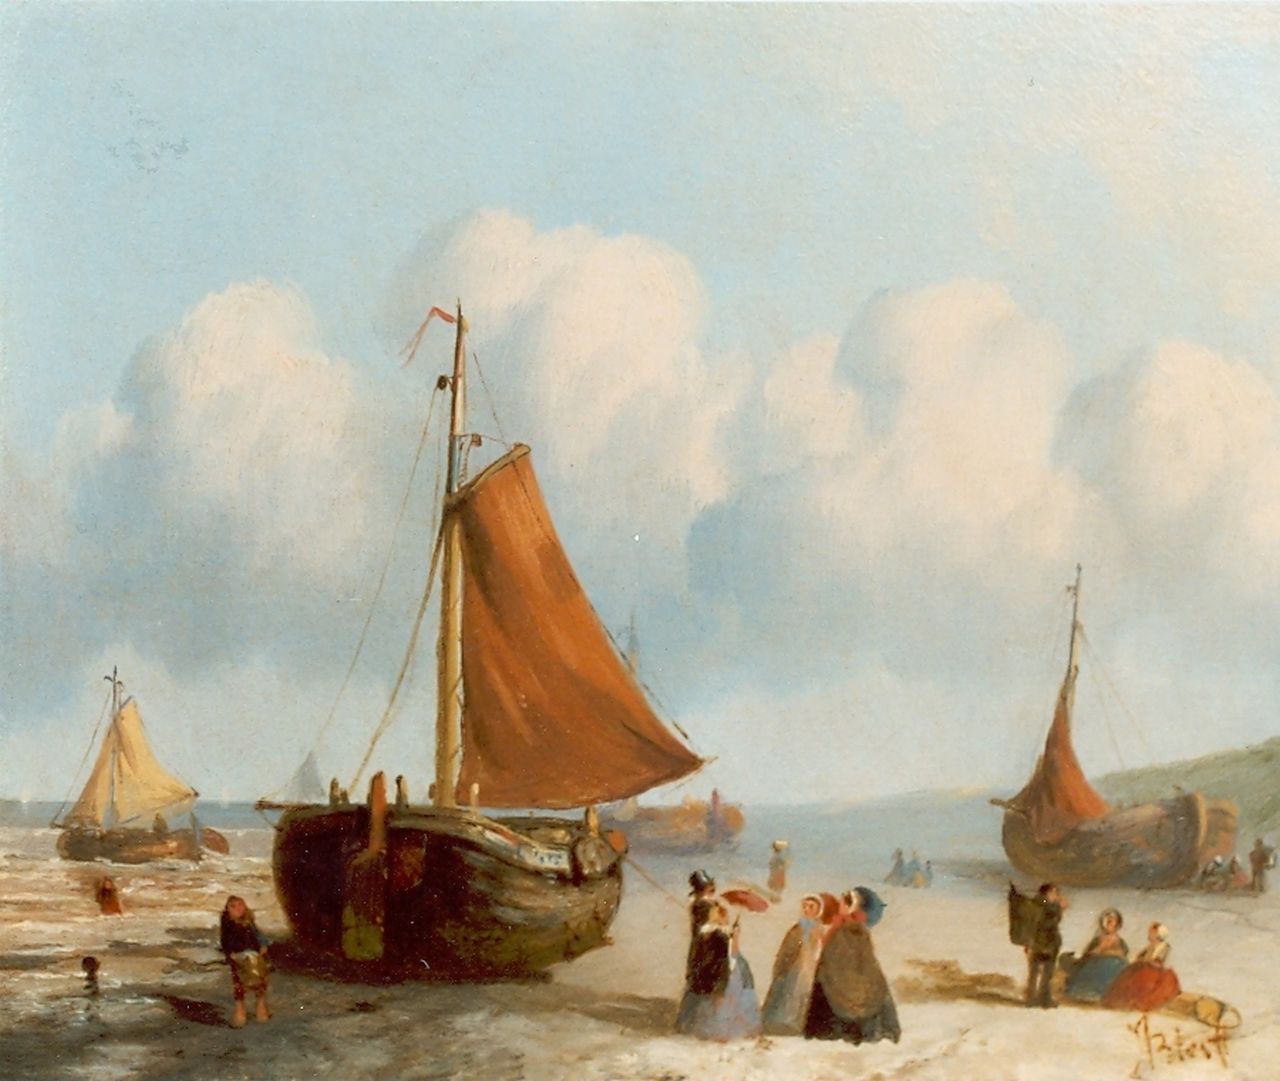 Bles J.  | Joseph Bles, Daily activities on the beach of Scheveningen, Öl auf Holz 20,0 x 25,5 cm, signed l.r.